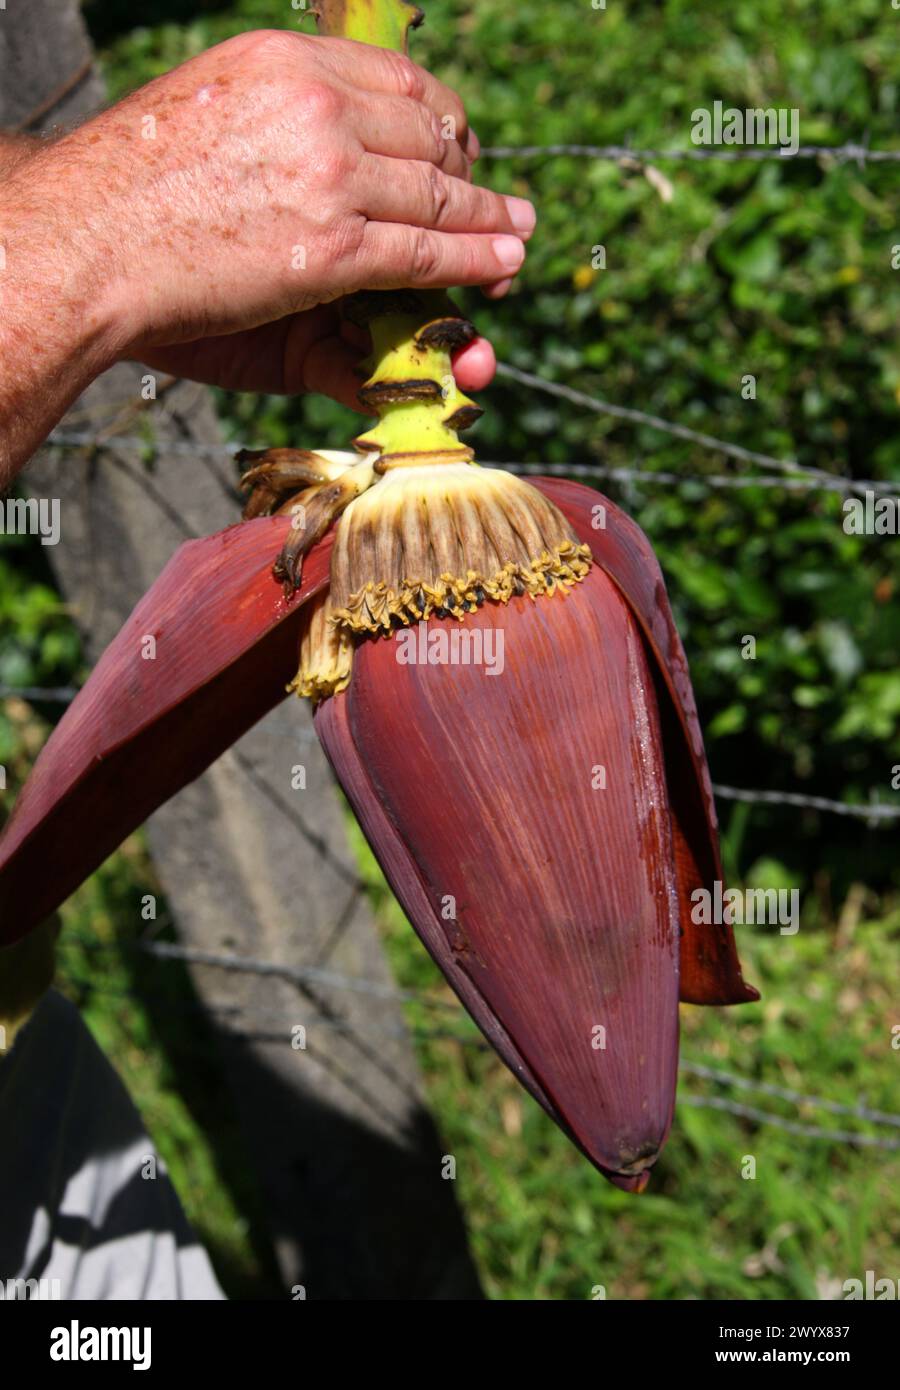 Banana flower bud, banana plantation, Cano Blanco, Costa Rica. Stock Photo